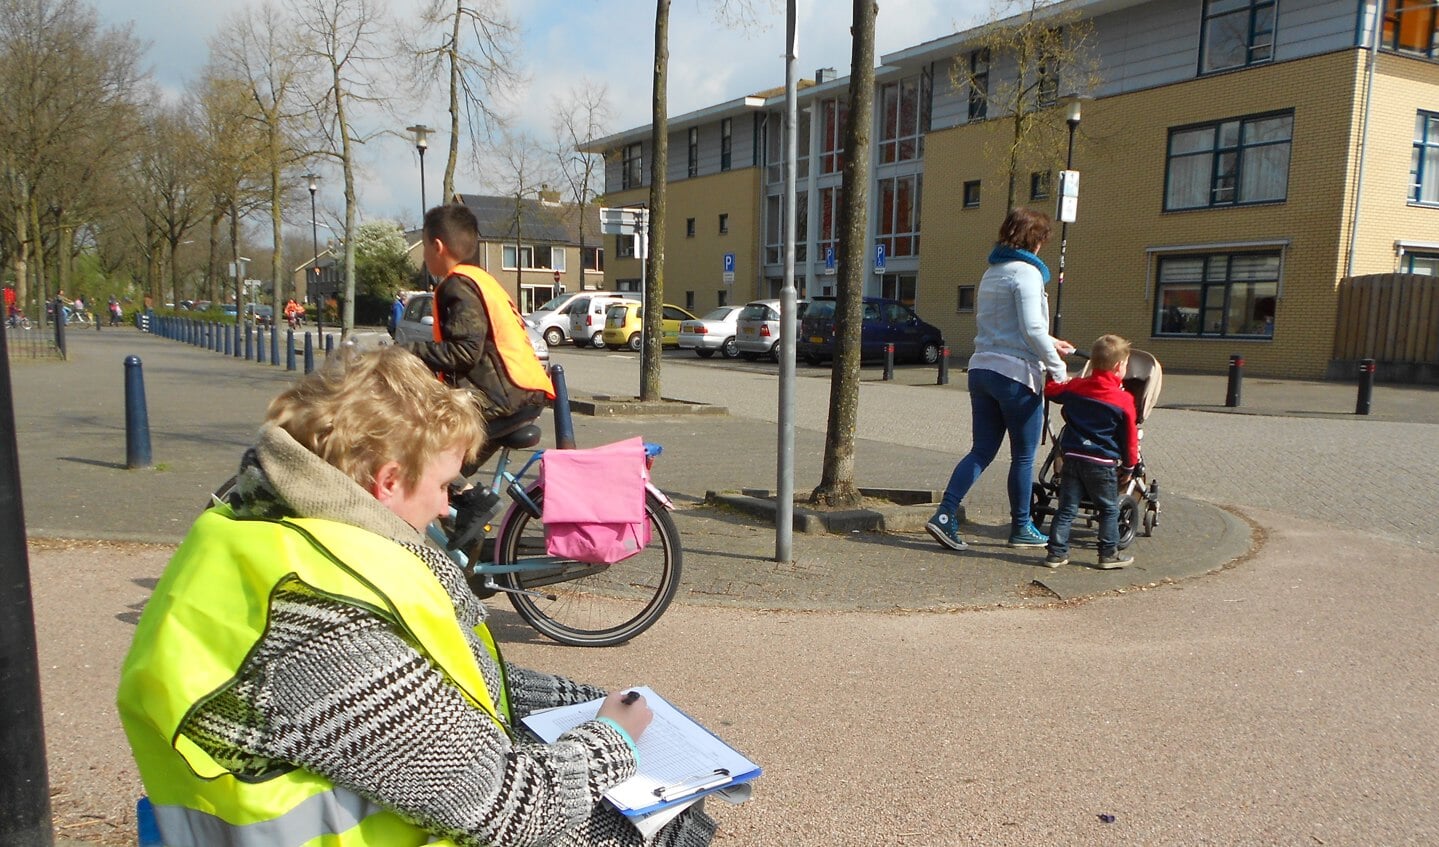 Controleposen met gele hesjes en fietsende kinderen met oranjehesjes vormden het straatbeeld tijdens het verkeersexamen.